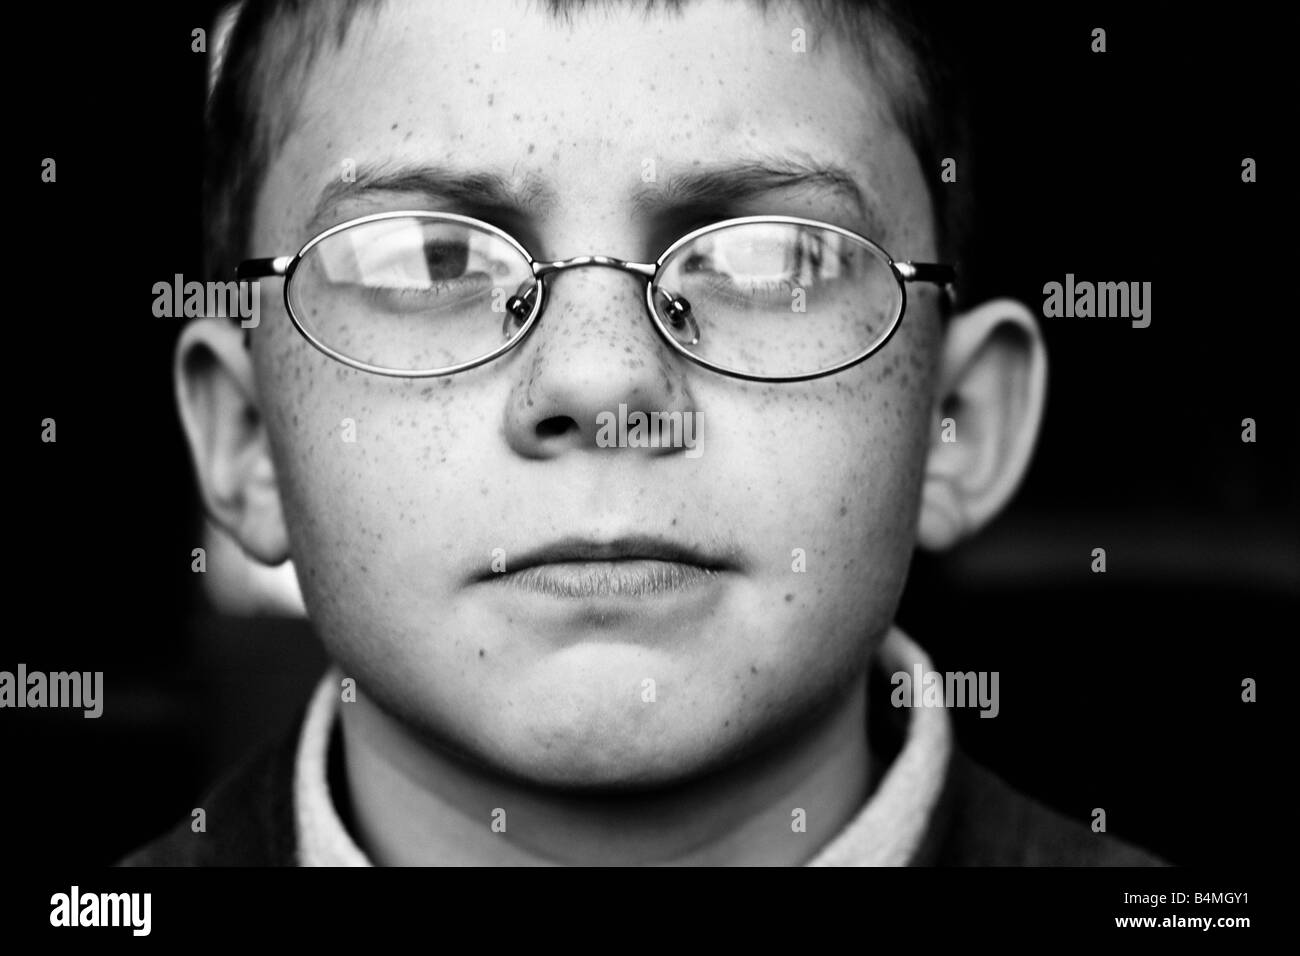 Close up portrait noir et blanc d'un jeune garçon portant des lunettes Banque D'Images